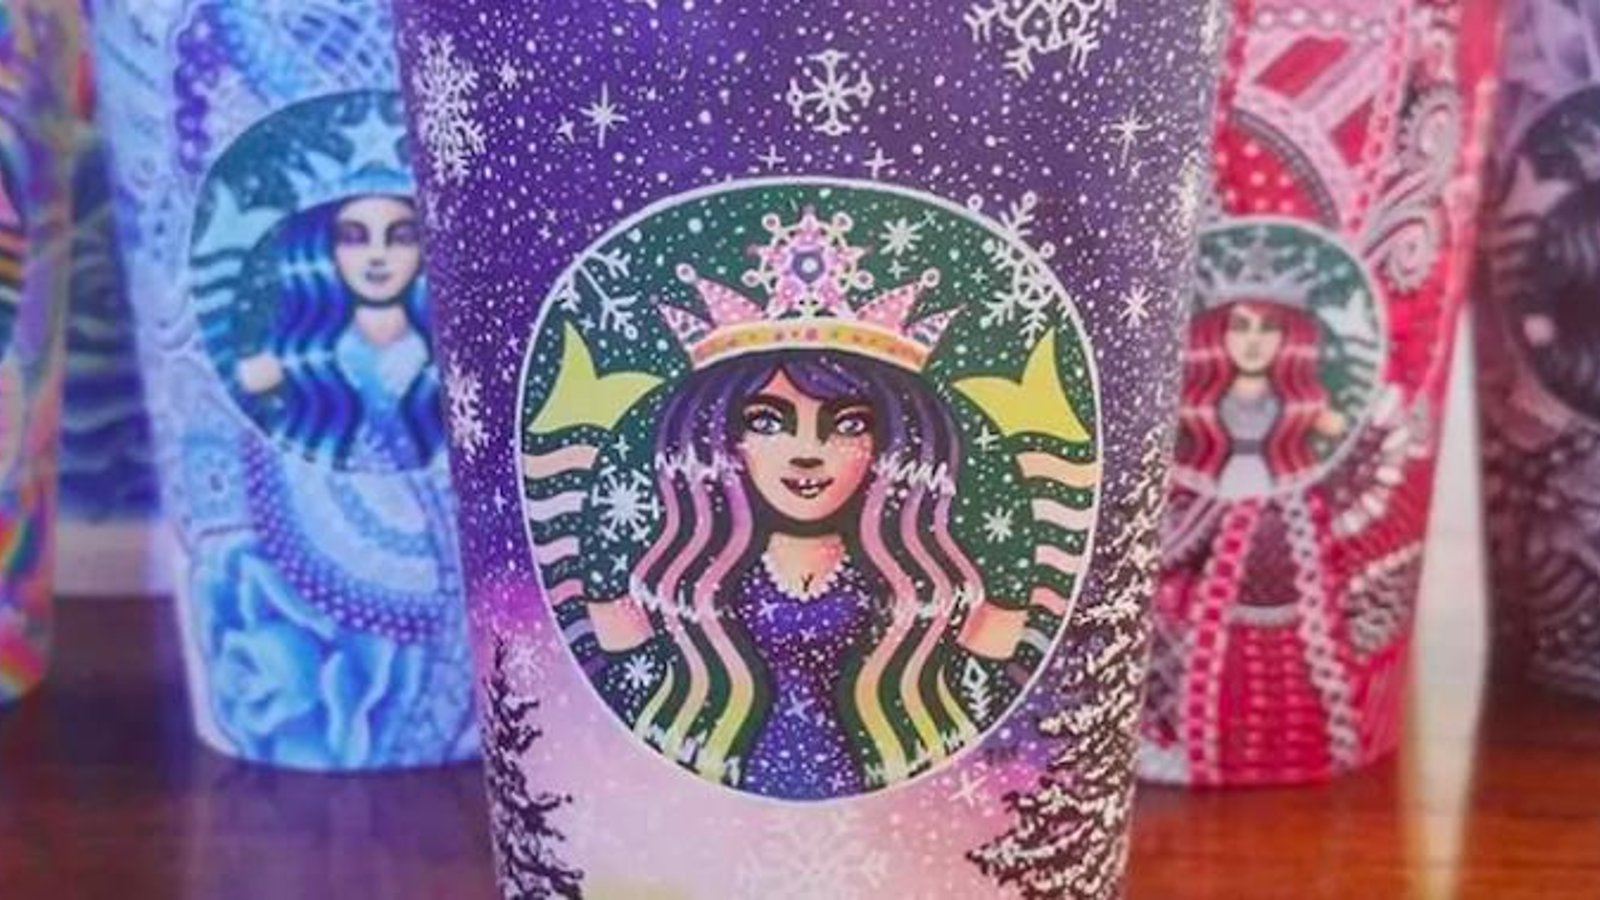 Une jeune artiste transforme des verres de chez Starbucks en formidables oeuvres d'art